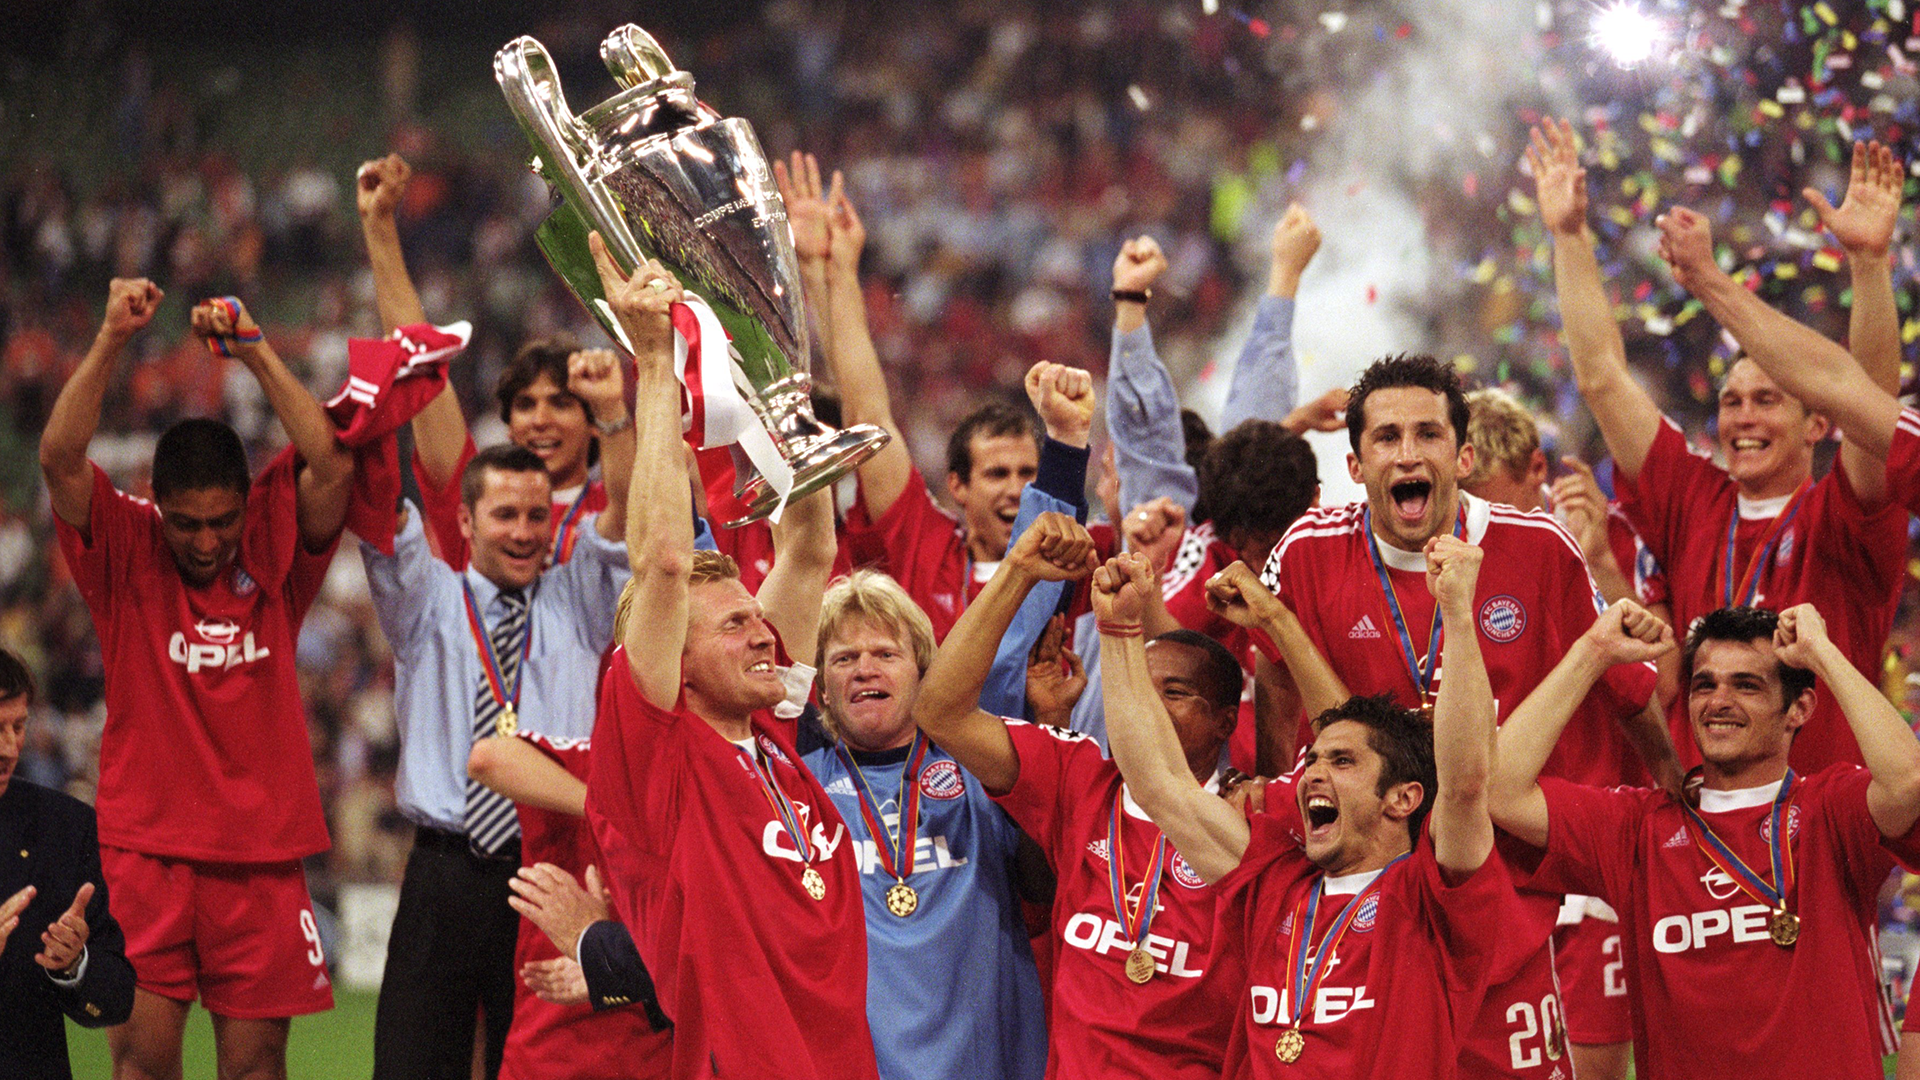 Bayern 2001 Champions League winners